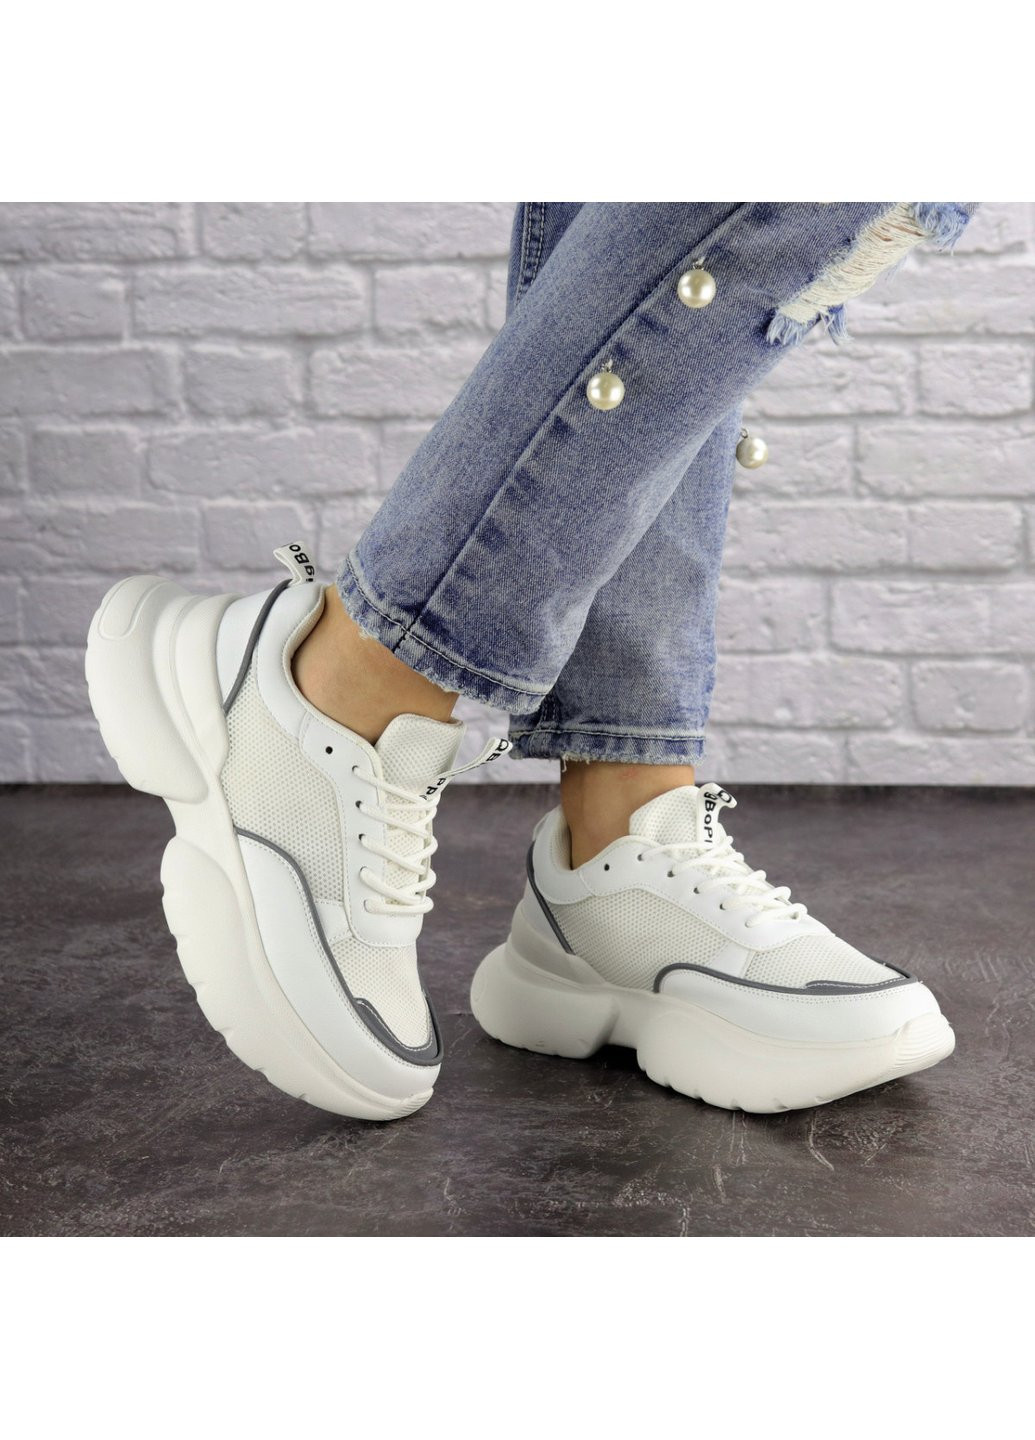 Белые демисезонные женские кроссовки choe 1583 24 белый Fashion